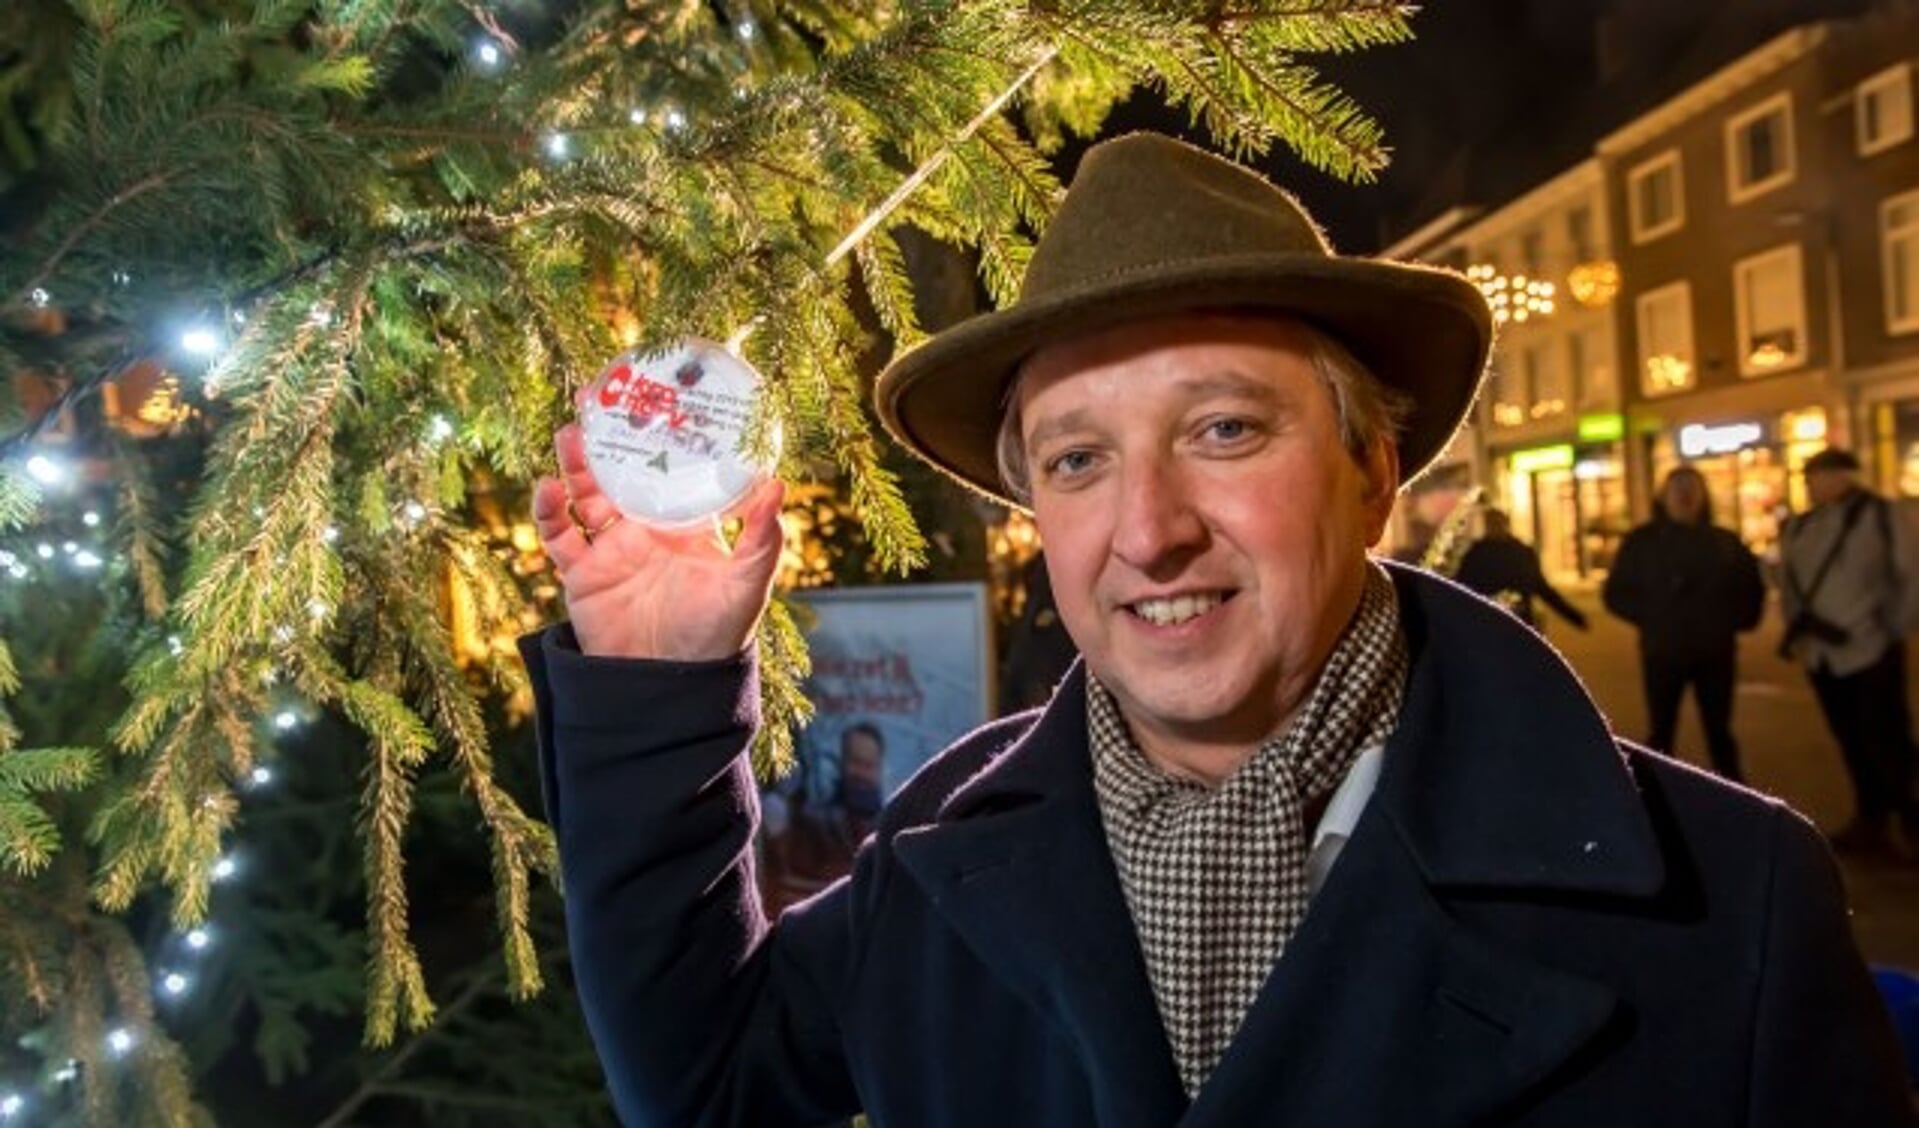 Burgemeester Beenakker hier met zijn wens bij de Tielse Jorisboom aan de Tielse Groenmarkt, ook met de Joris-kerstboom kwam Tiel landelijk op TV tijdens de kerstuitzending van Joris Linssen 